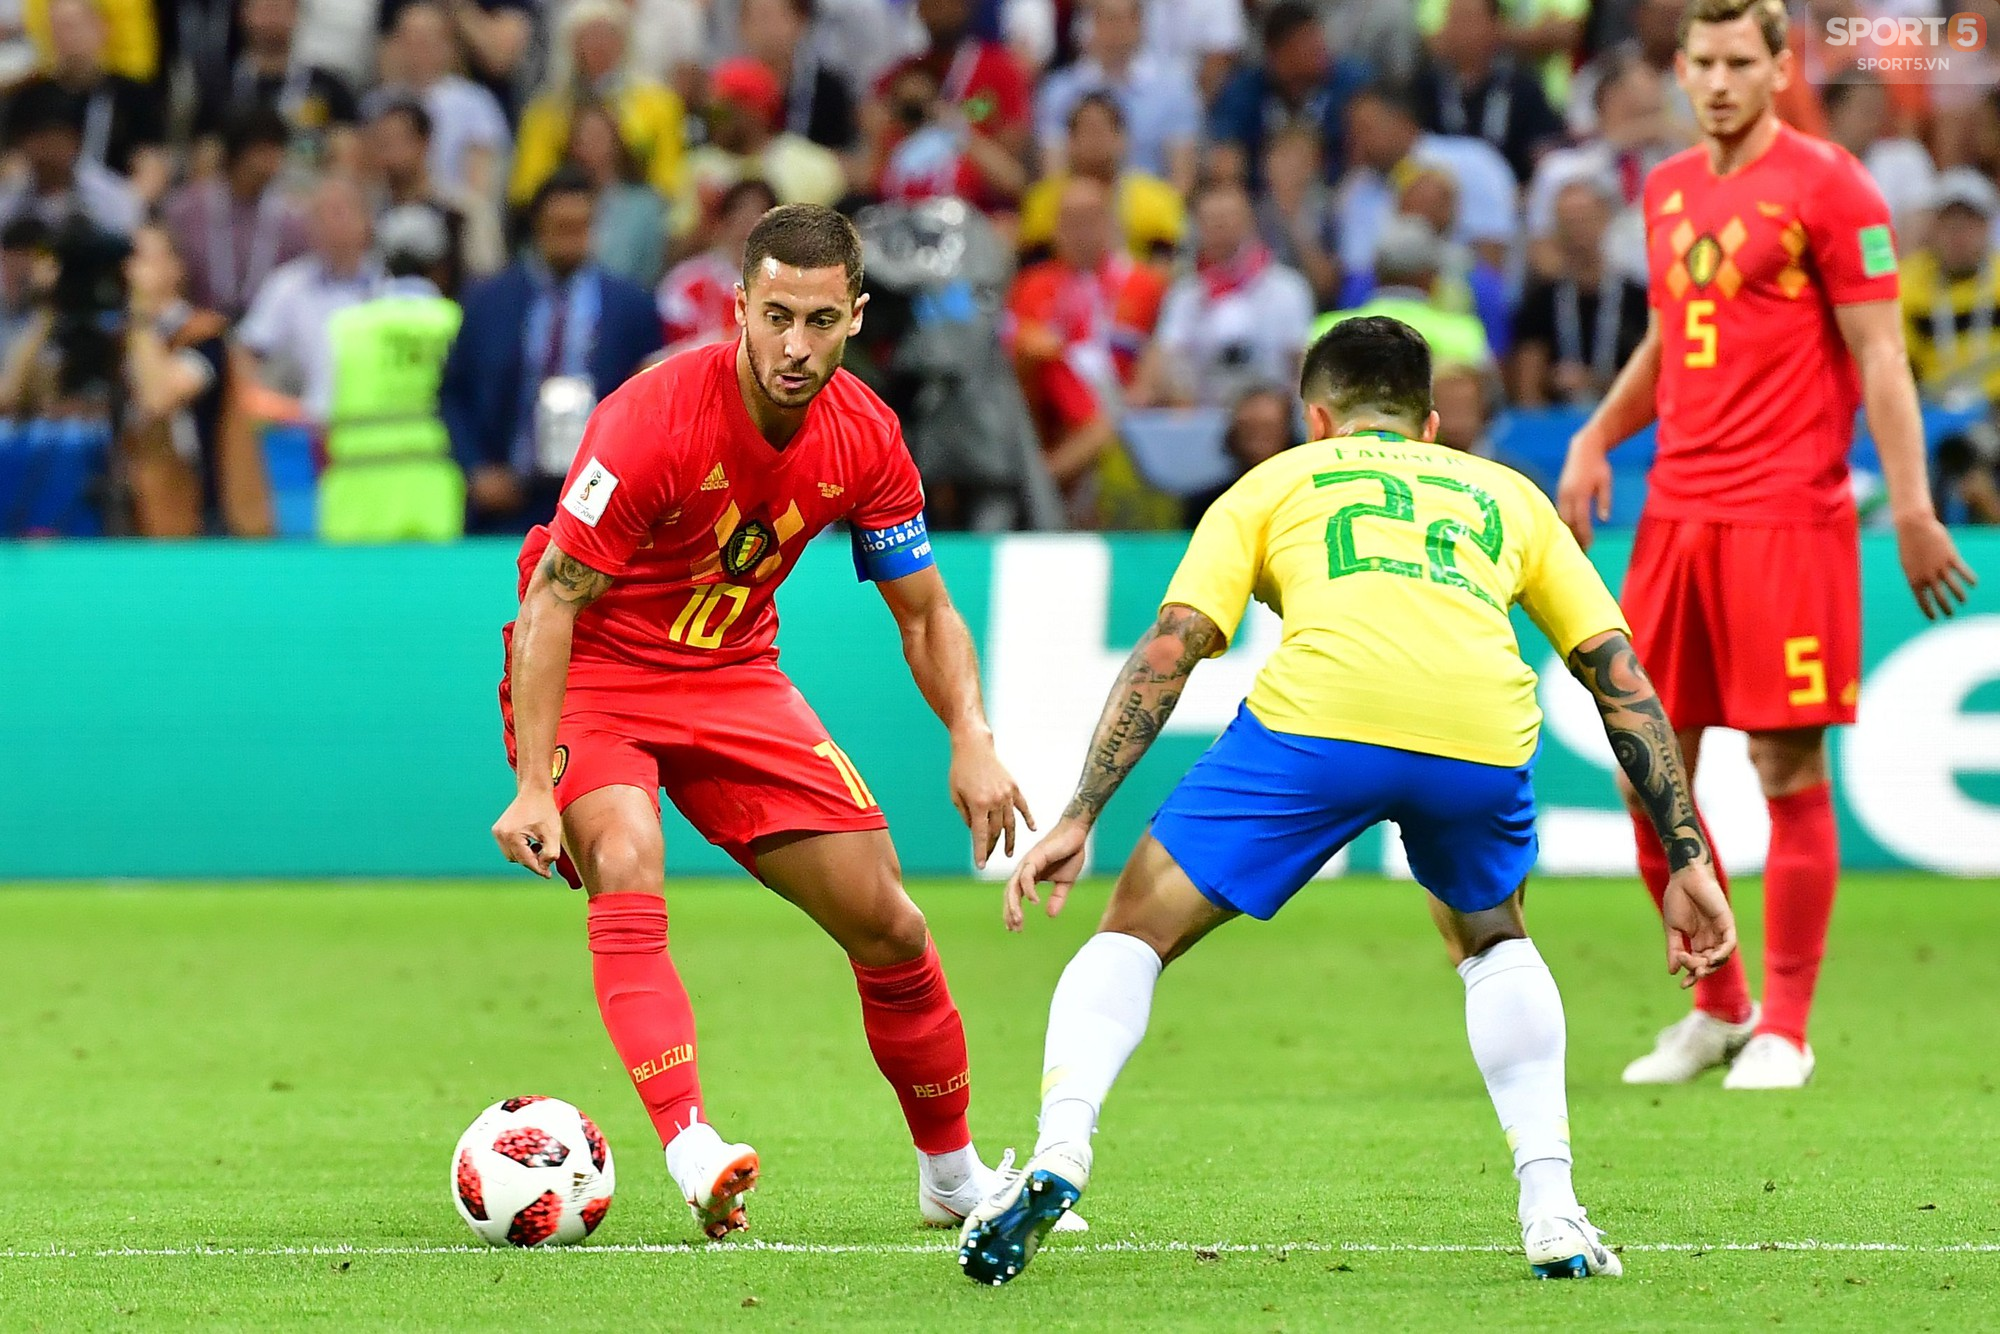 Thành tích của Hazard bằng cả tuyển Brazil cộng lại - Ảnh 1.